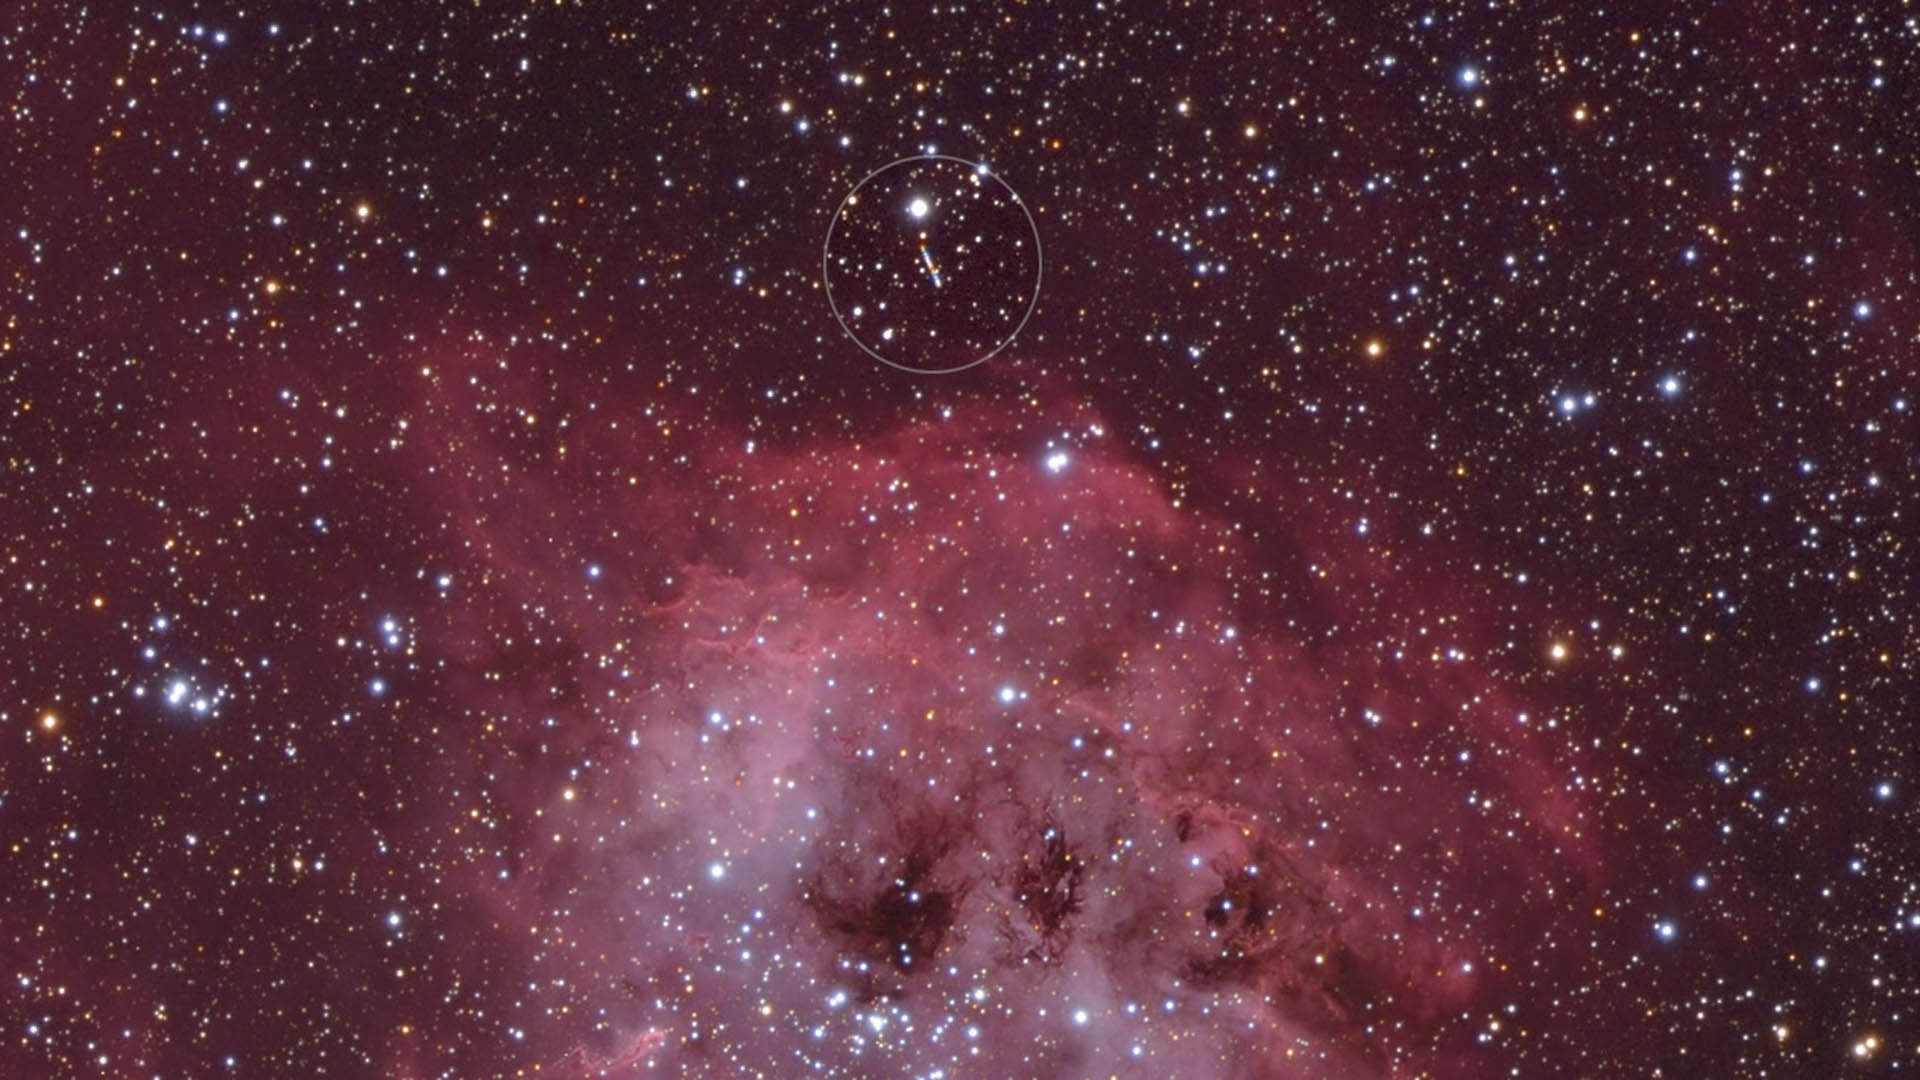 Uma imagem típica junta da eclítica: o planetoide (81) Terpsícore (identificado com um círculo) provoca um rasto brilhante nesta fotografia da nebulosa IC 410. M. Weigand